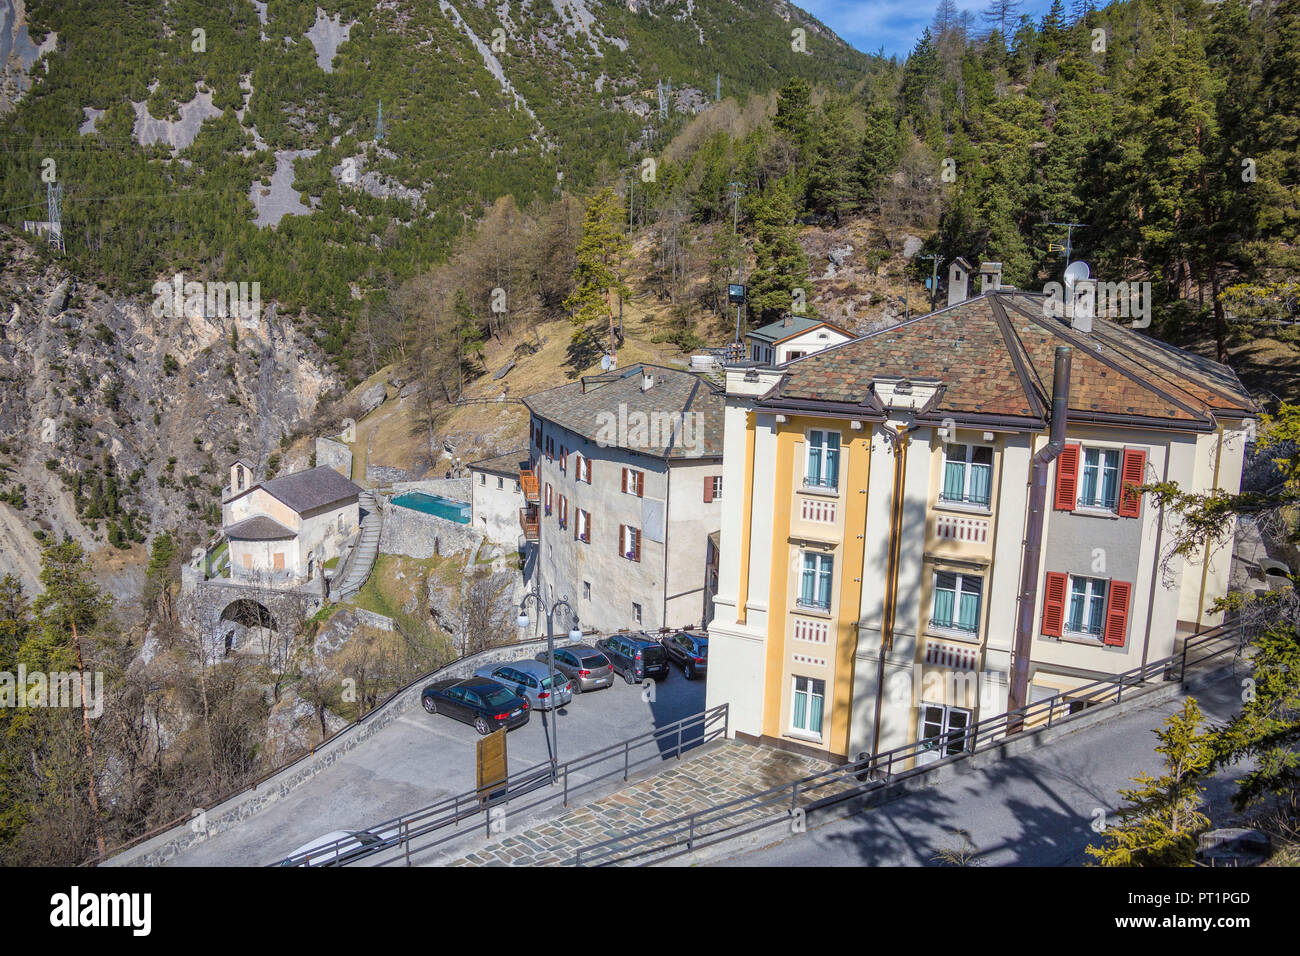 The spa complex called Bagni Vecchi of Bormio Upper Valtellina Lombardy Italy Stock Photo